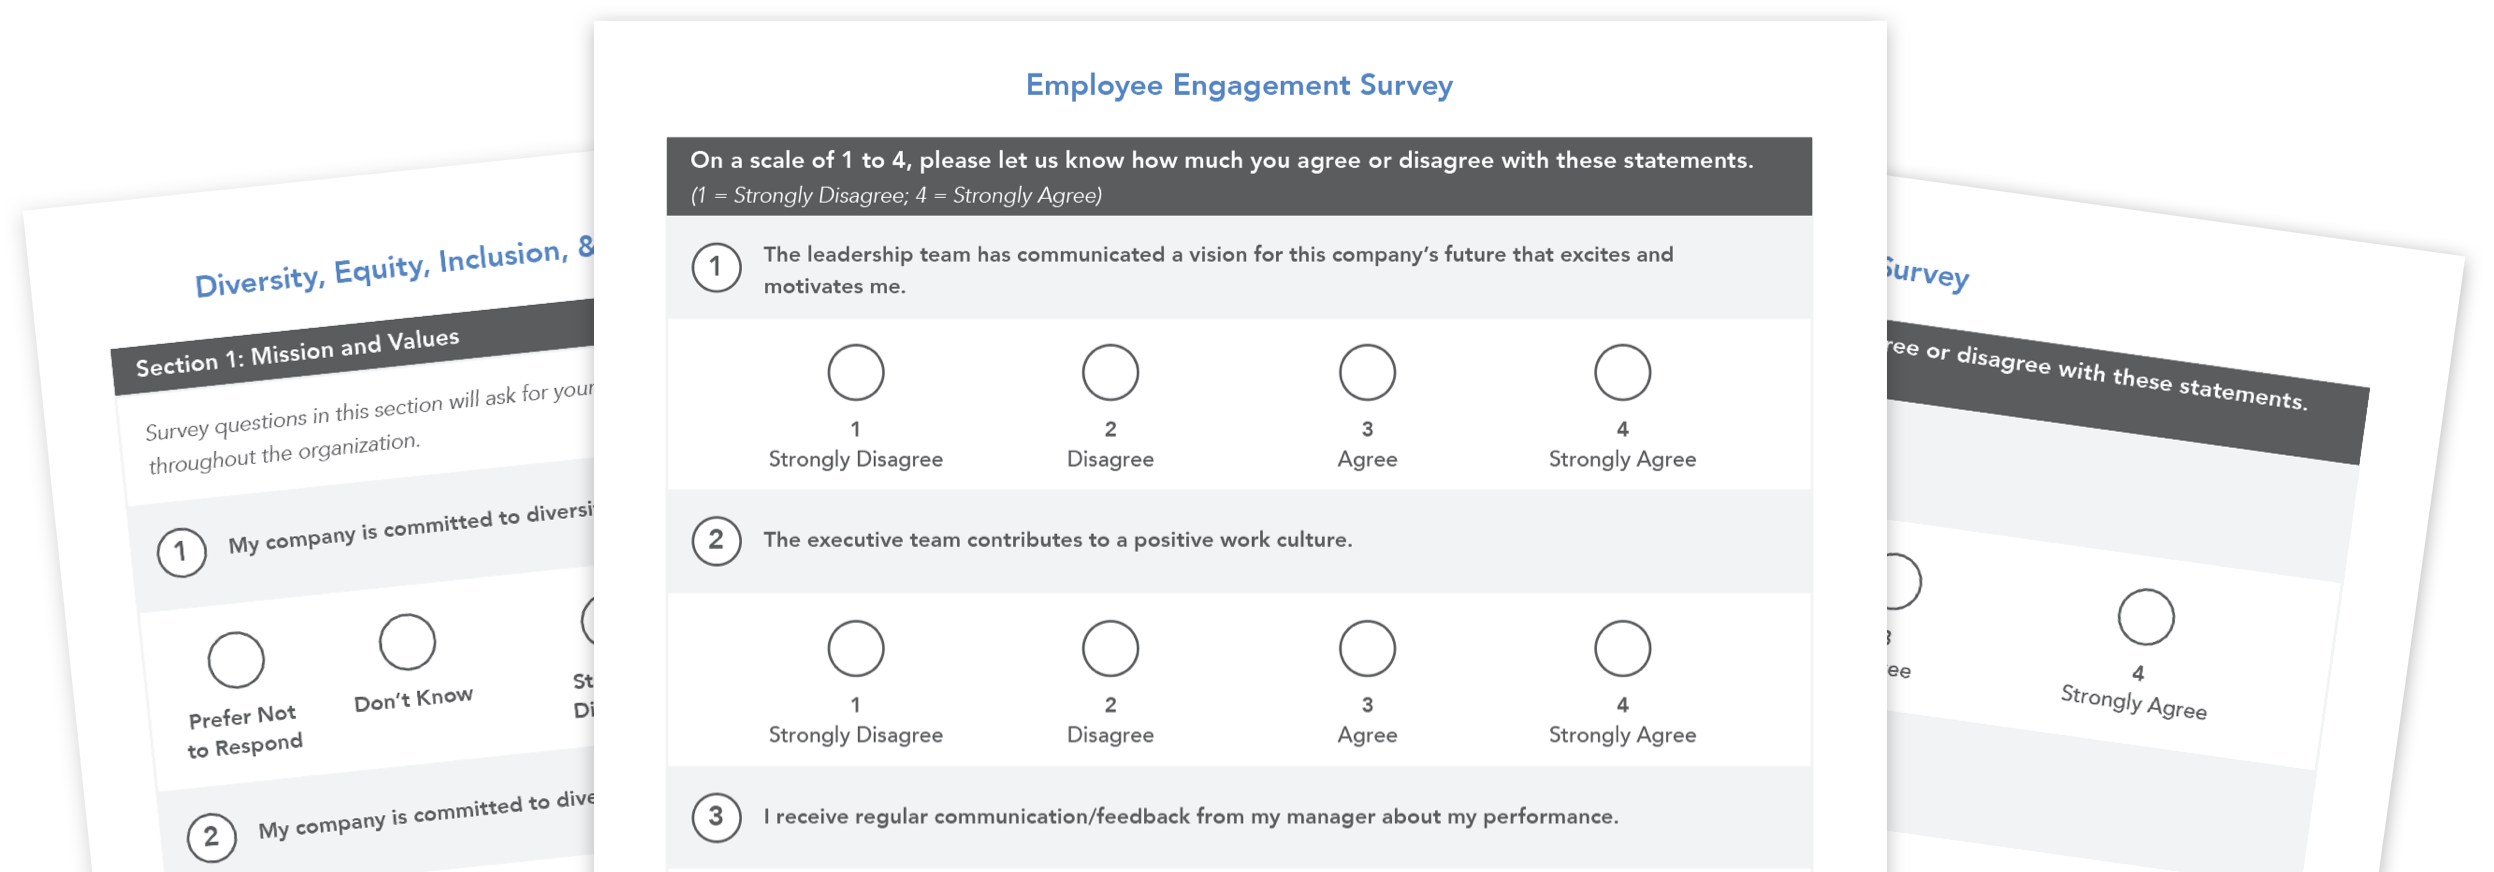 Employee-Engagement-Survey-Templates-Mockup-1